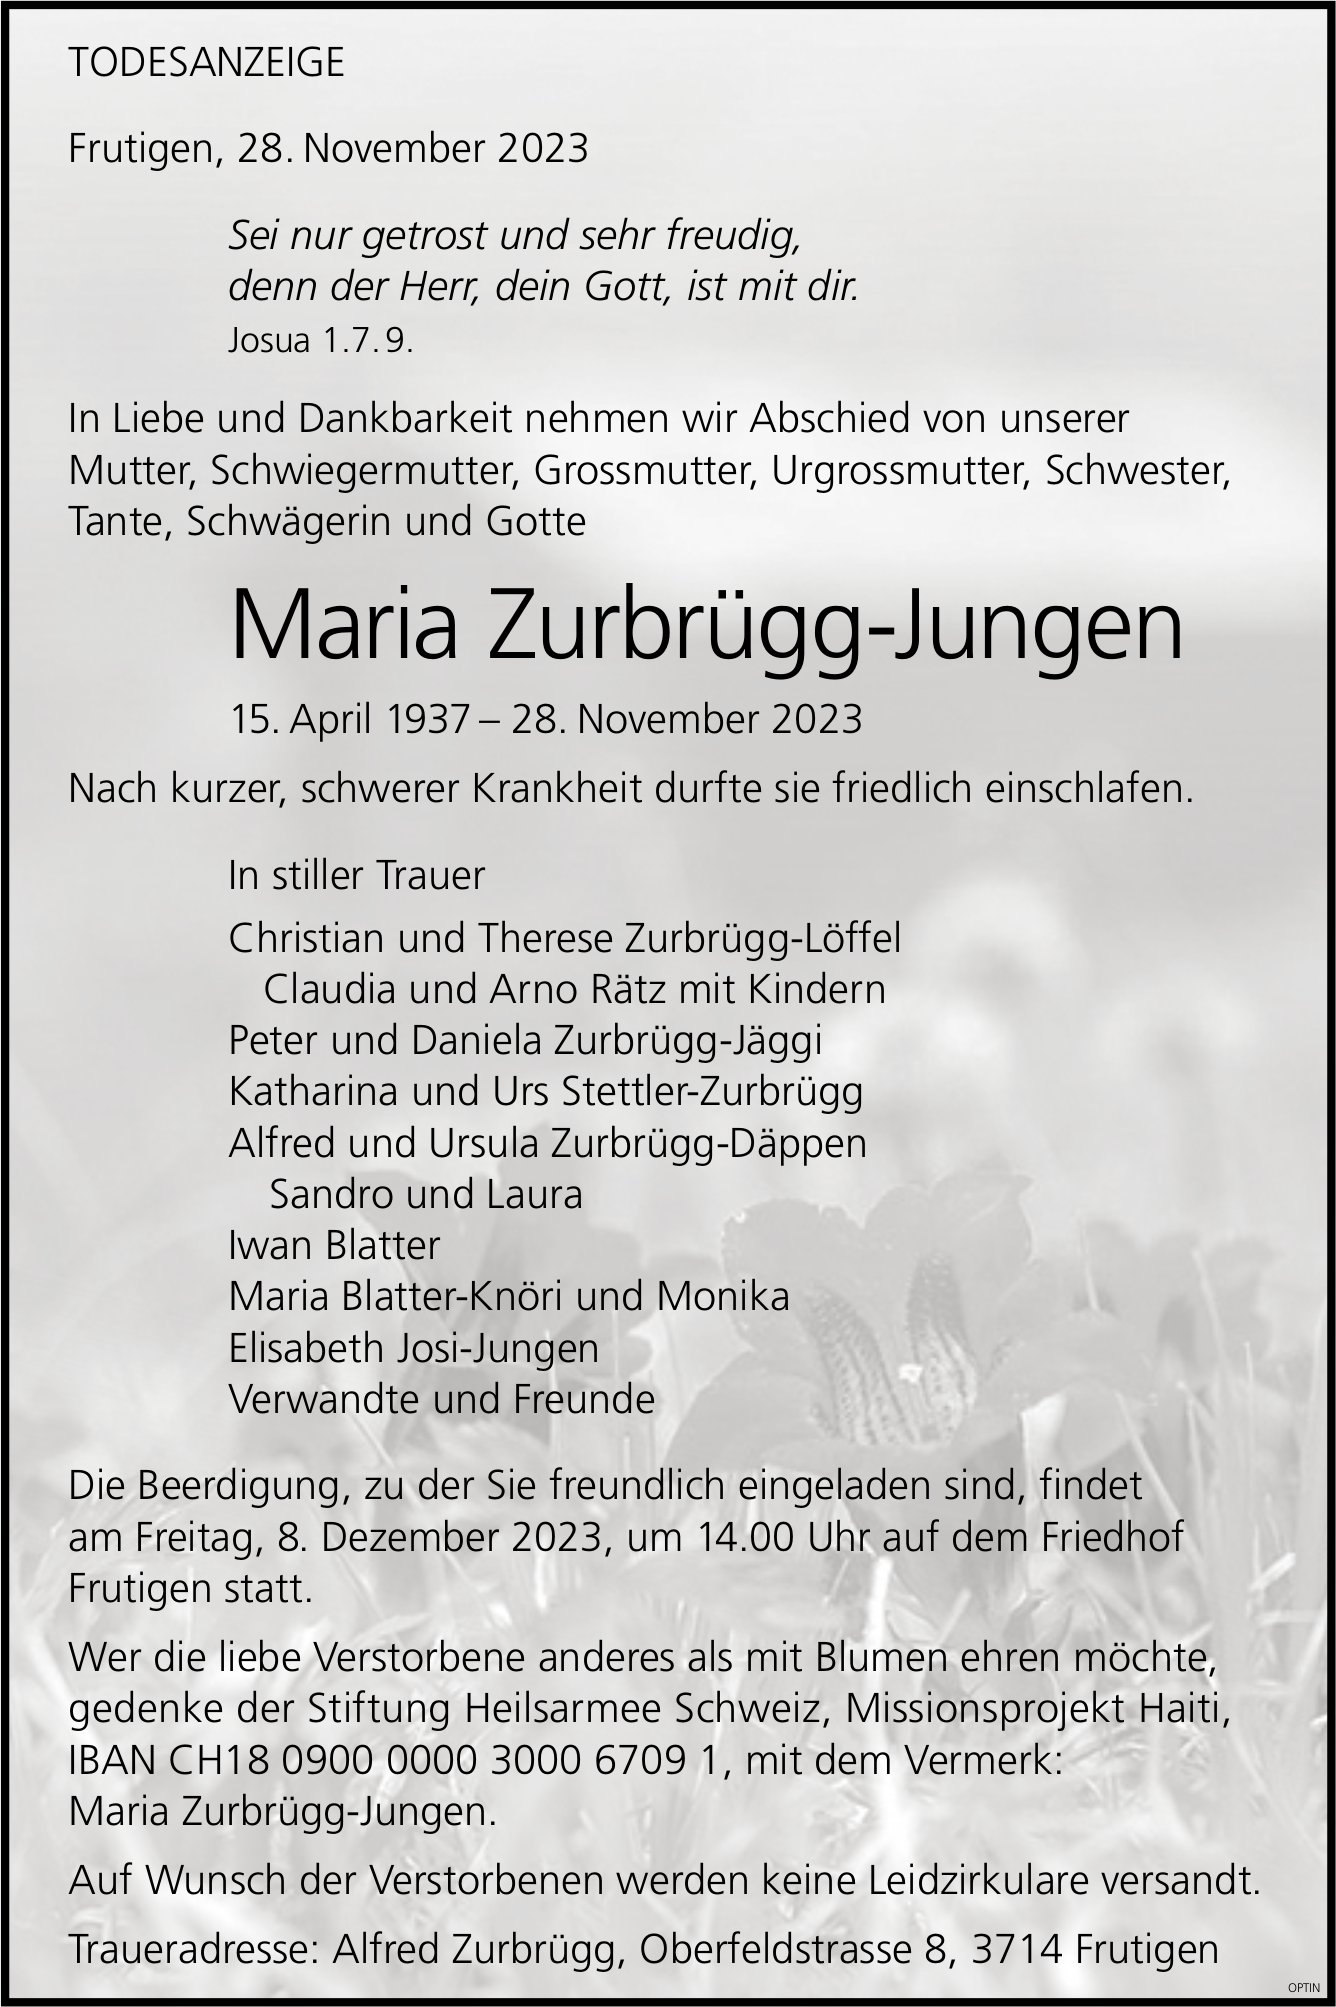 Maria Zurbrügg-Jungen, November 2023 / TA